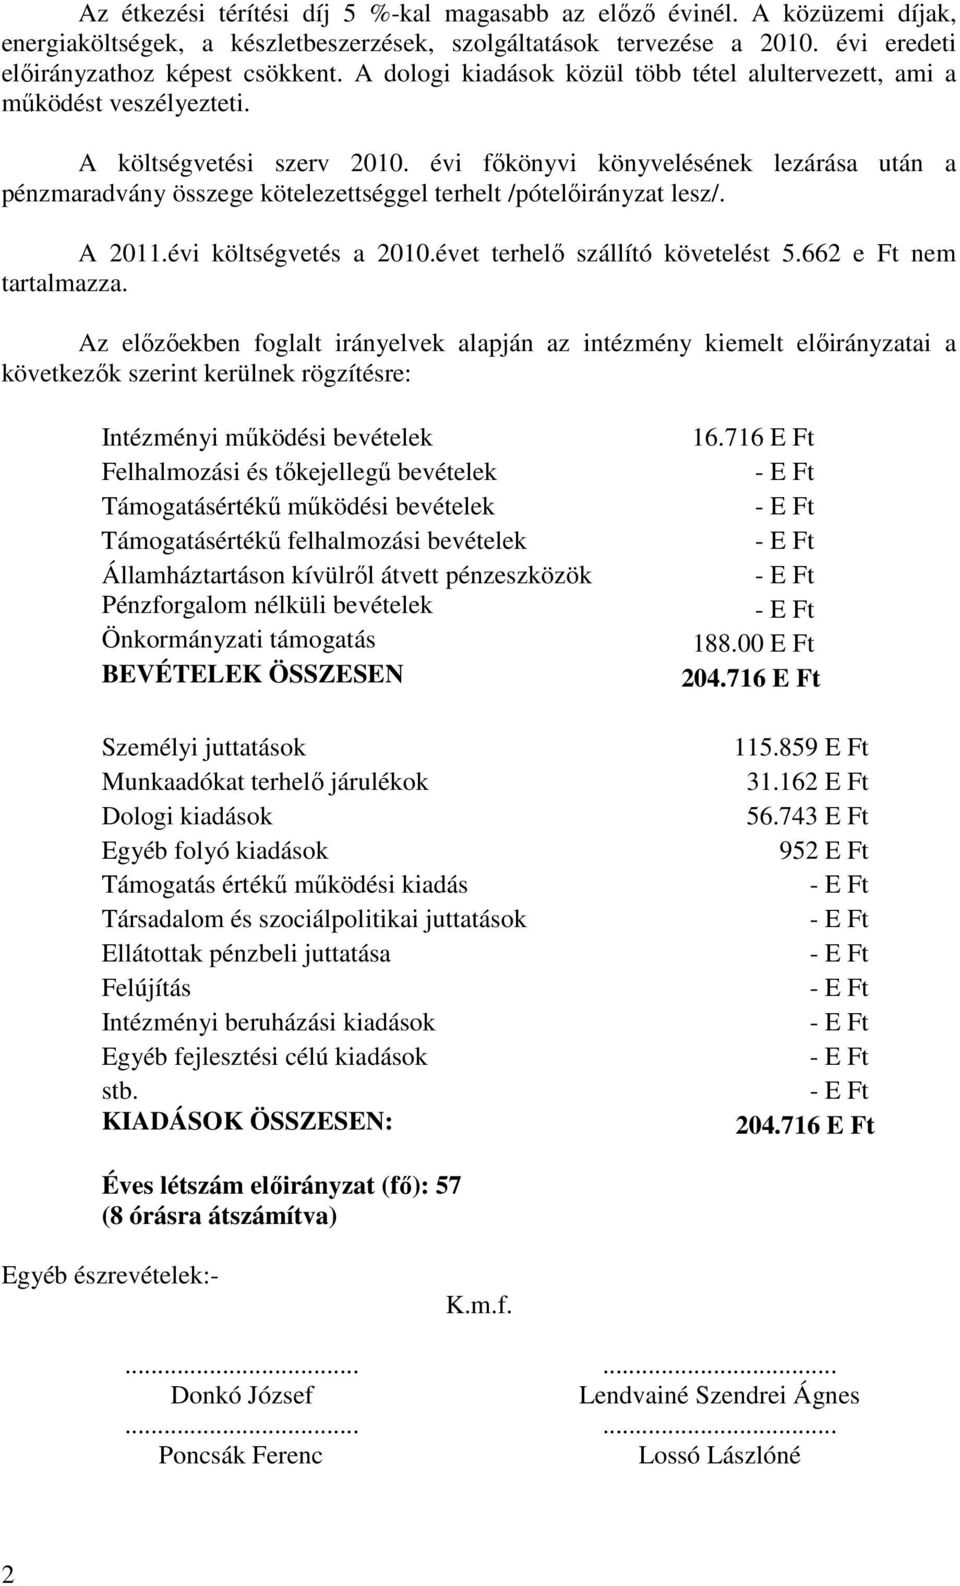 évi fıkönyvi könyvelésének lezárása után a pénzmaradvány összege kötelezettséggel terhelt /pótelıirányzat lesz/. A 2011.évi költségvetés a 2010.évet terhelı szállító követelést 5.